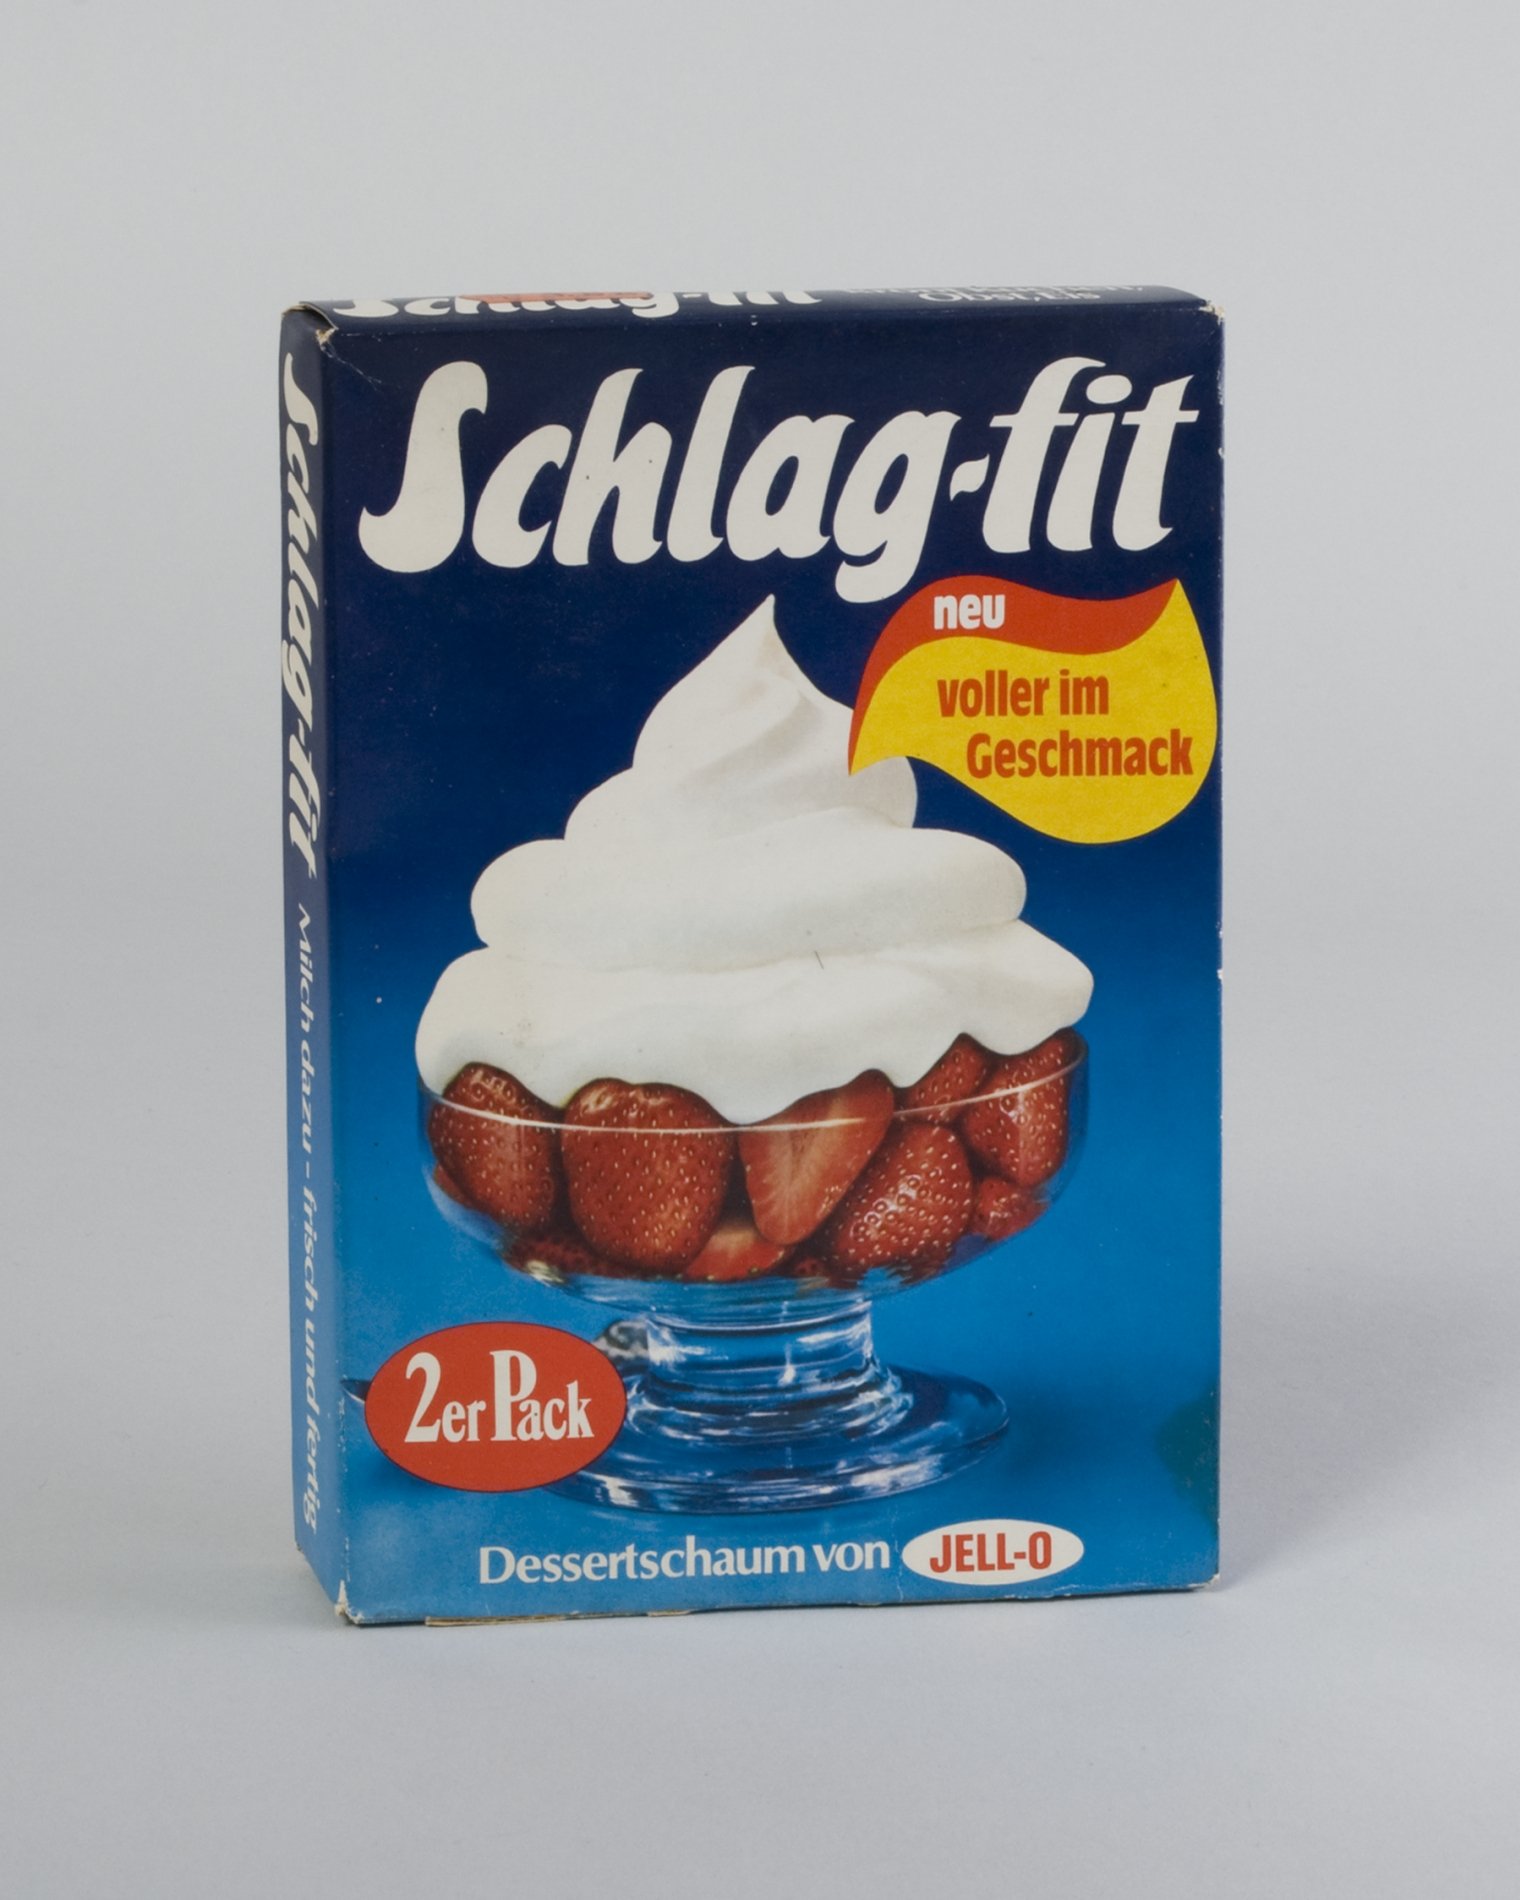 Verpackung "Schlag-fit" - "Dessertschaum von JELL-O" (Stiftung Domäne Dahlem - Landgut und Museum, Weiternutzung nur mit Genehmigung des Museums CC BY-NC-SA)